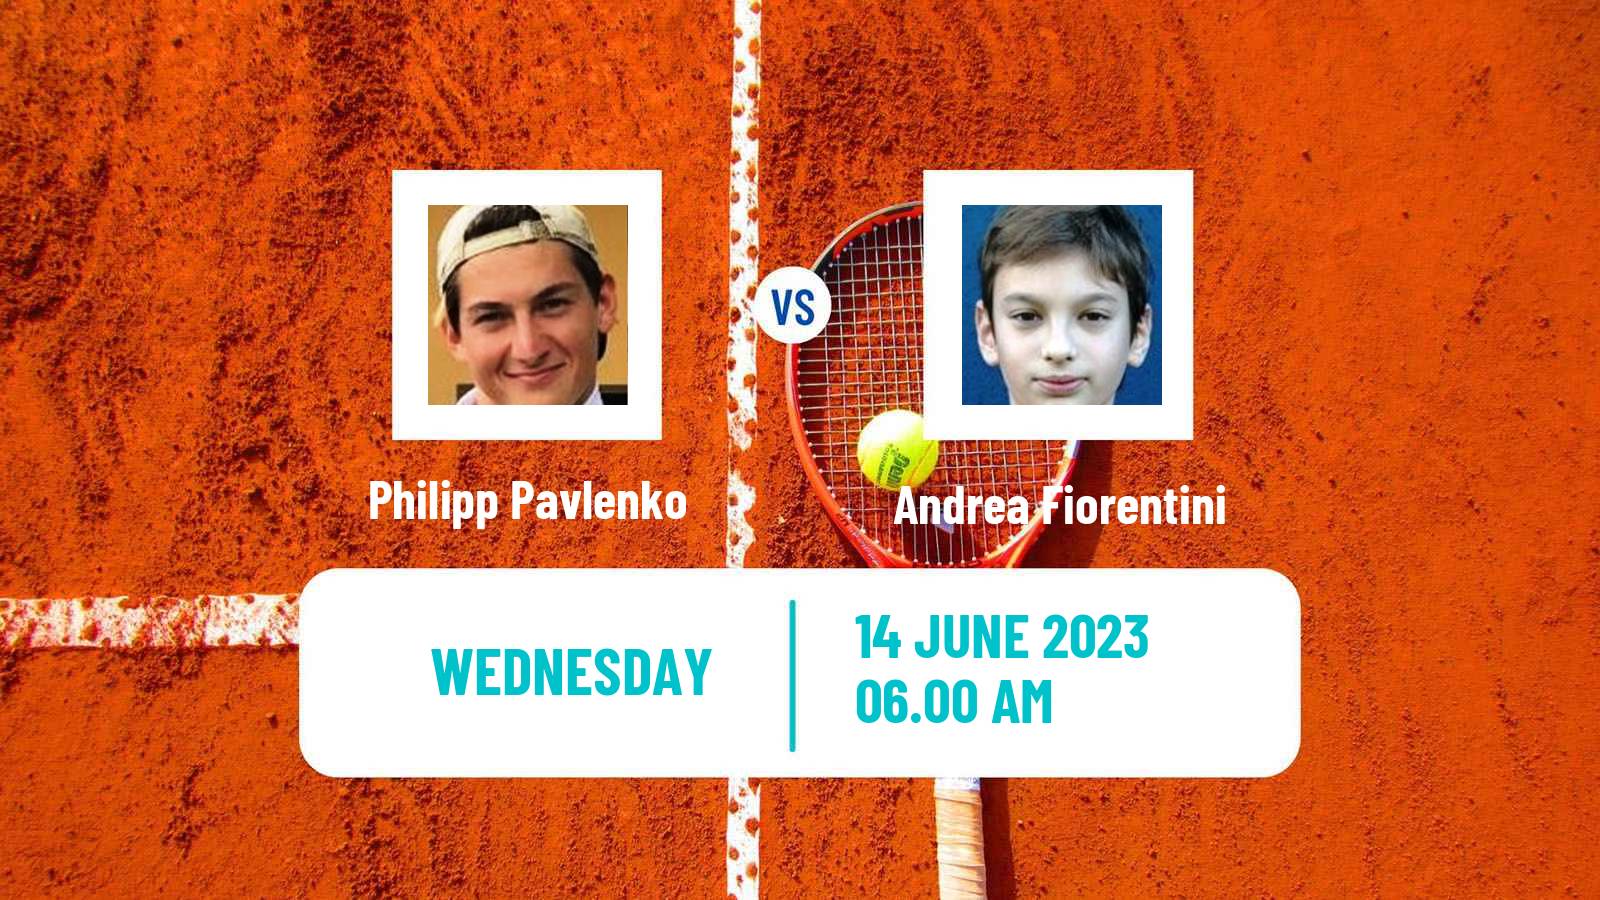 Tennis ITF M25 Risskov Aarhus Men Philipp Pavlenko - Andrea Fiorentini